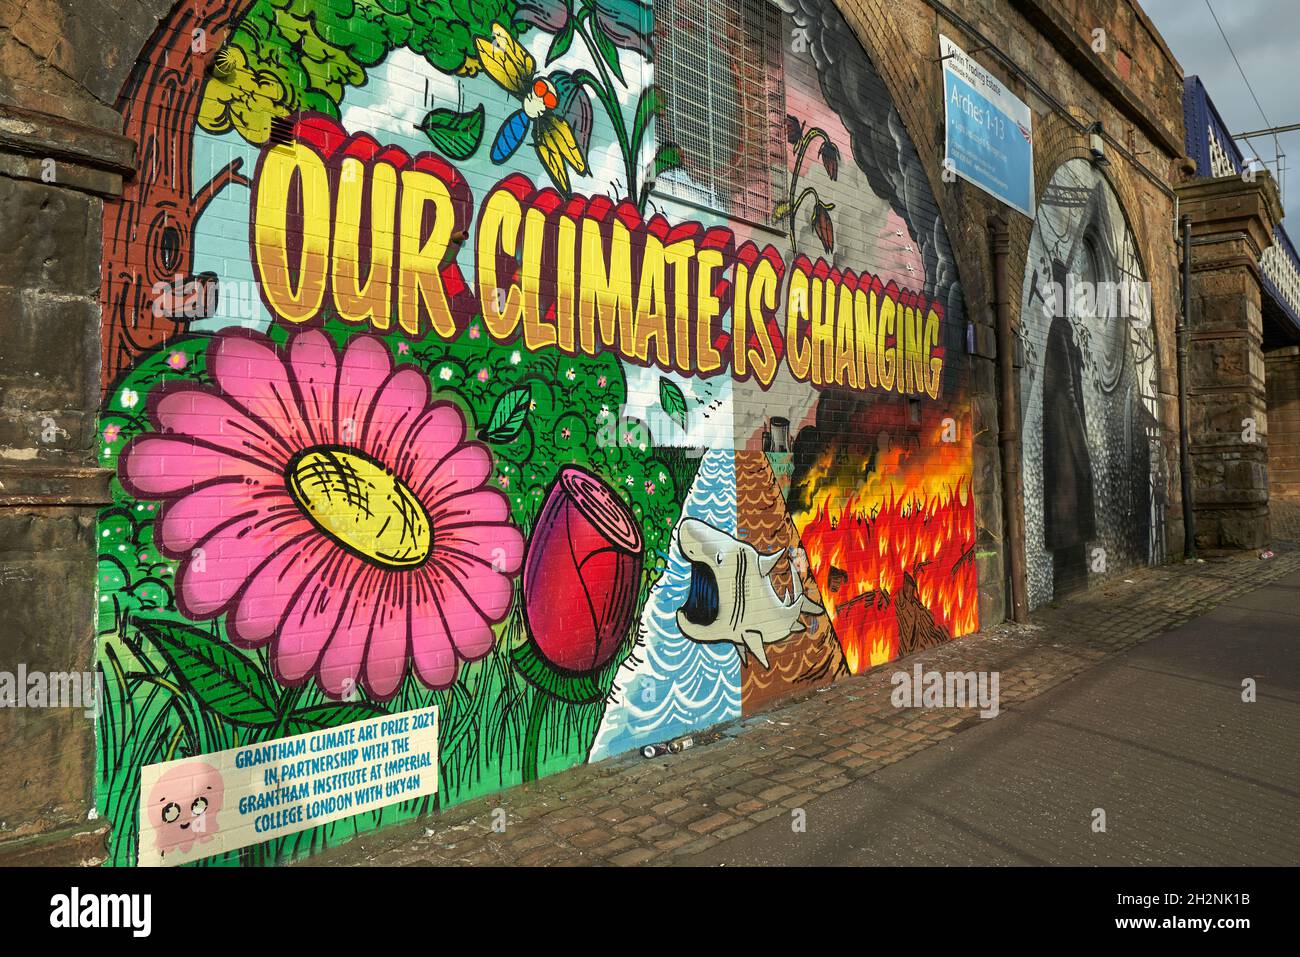 Vue du lieu de la conférence COP26 des Nations Unies sur les changements climatiques Banque D'Images